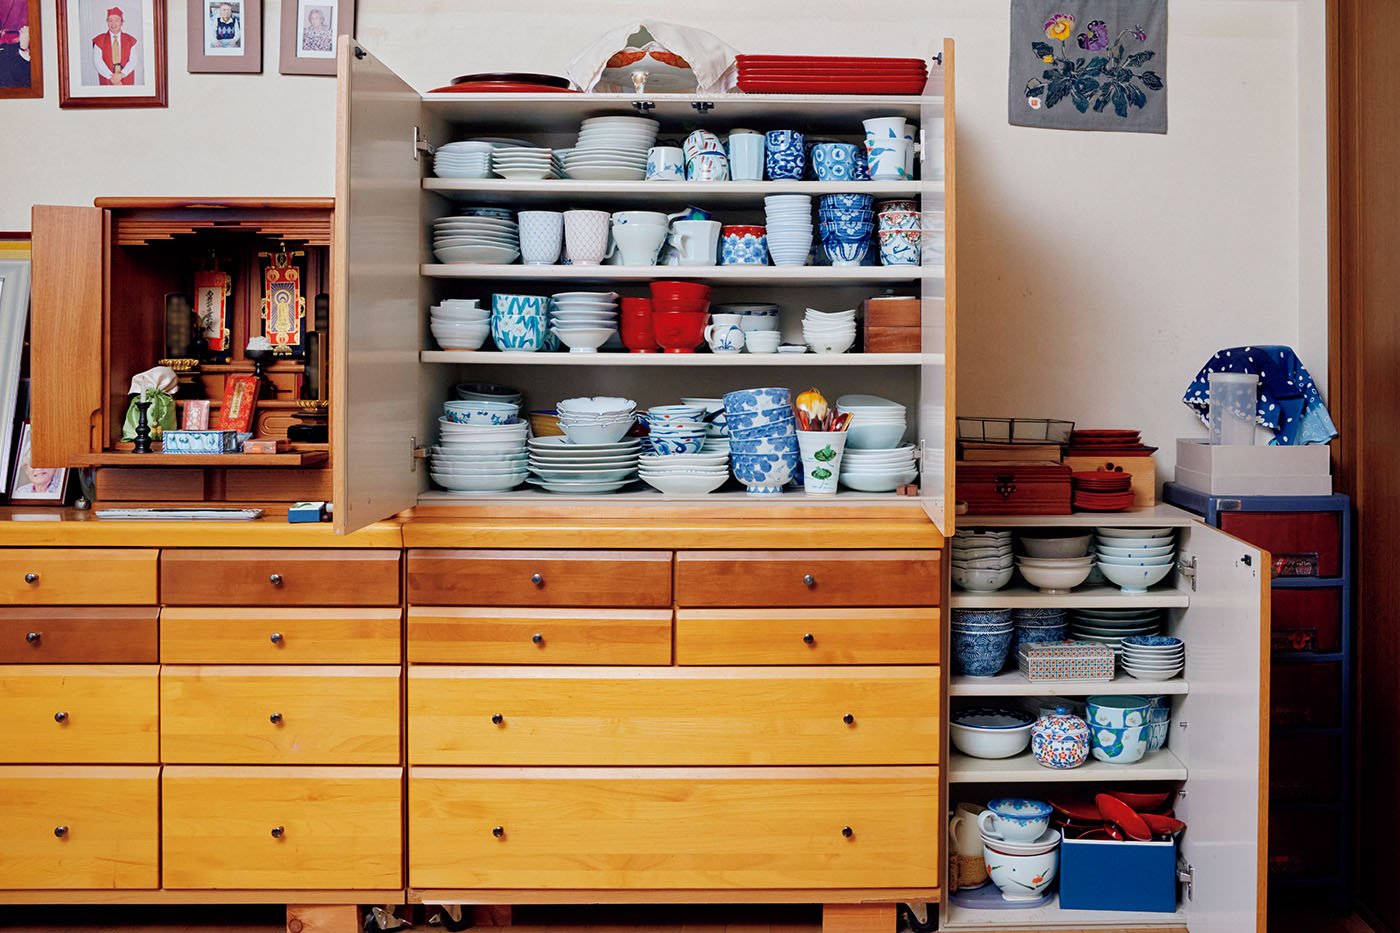 70代、ひとり暮らしでも「食器はたくさん」。“だれにでも開かれた家”の工夫とは